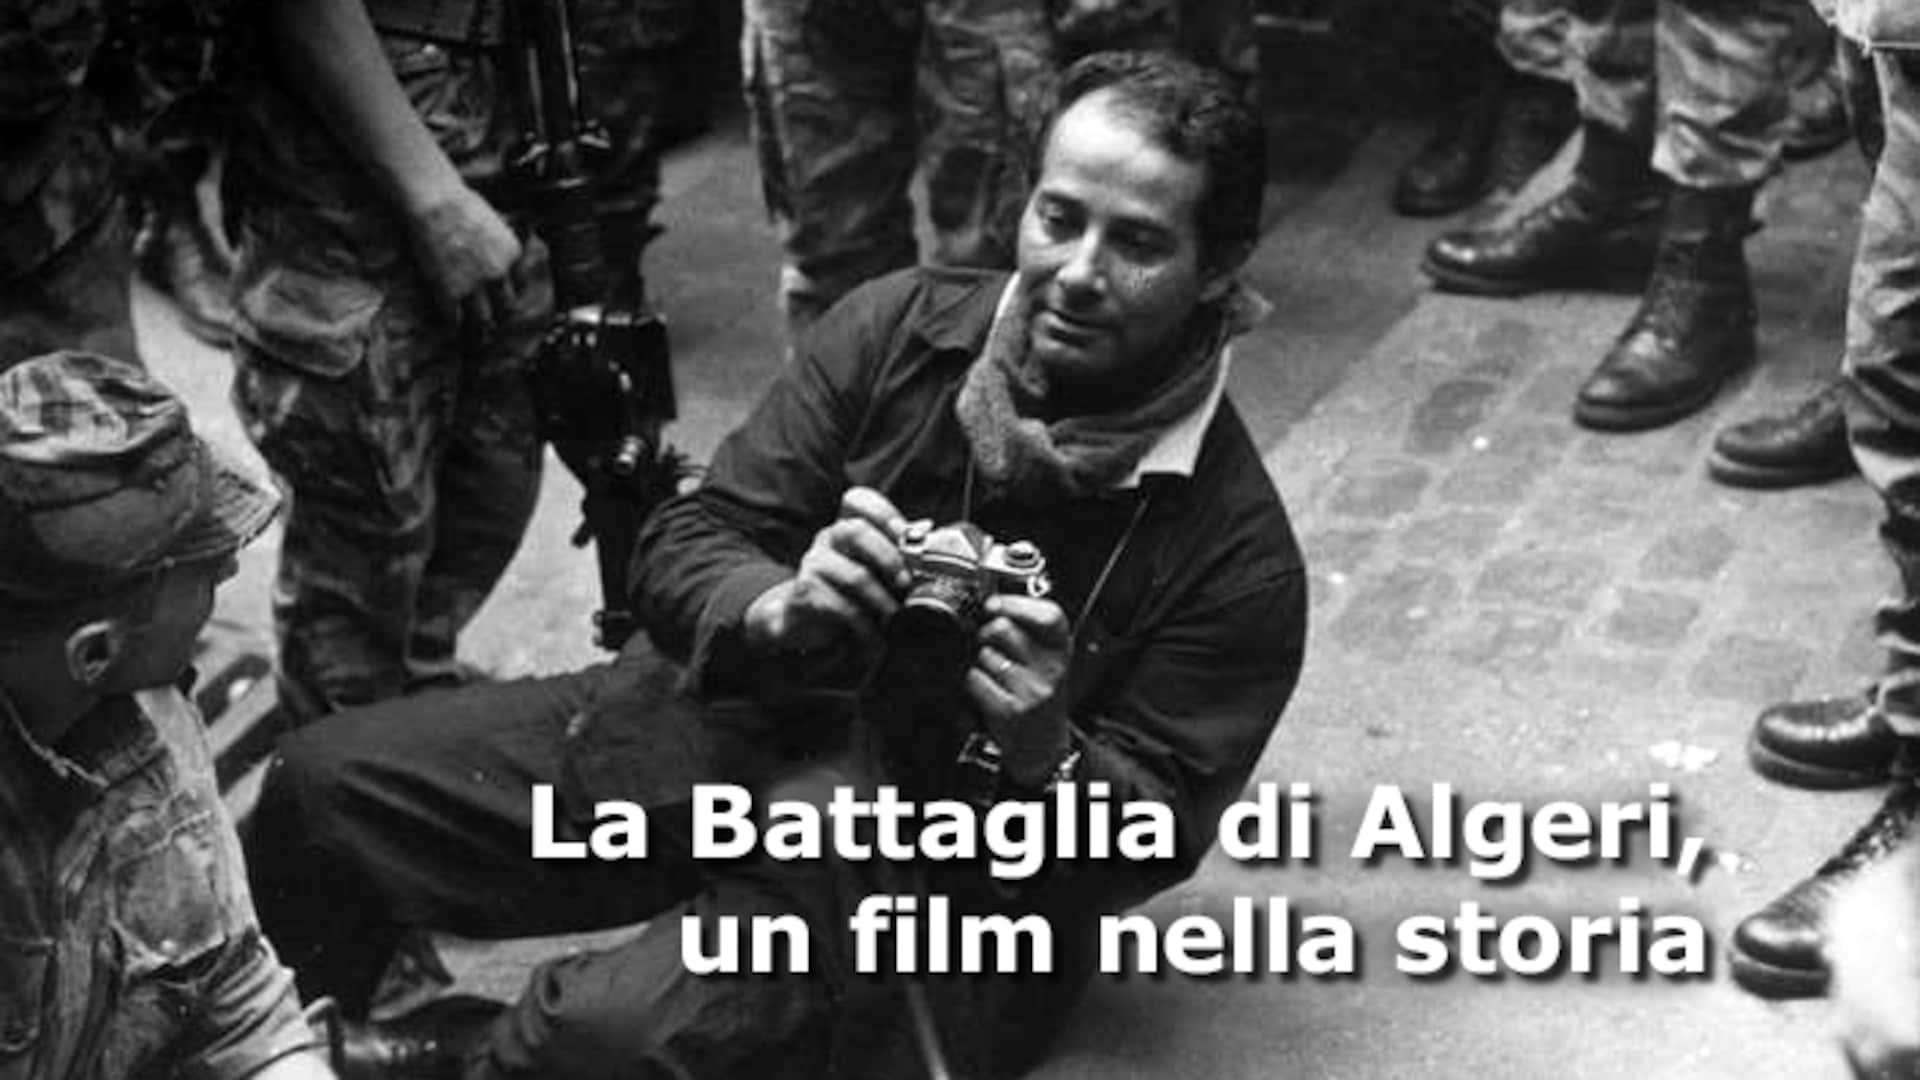 La battaglia di Algeri, un film nella storia